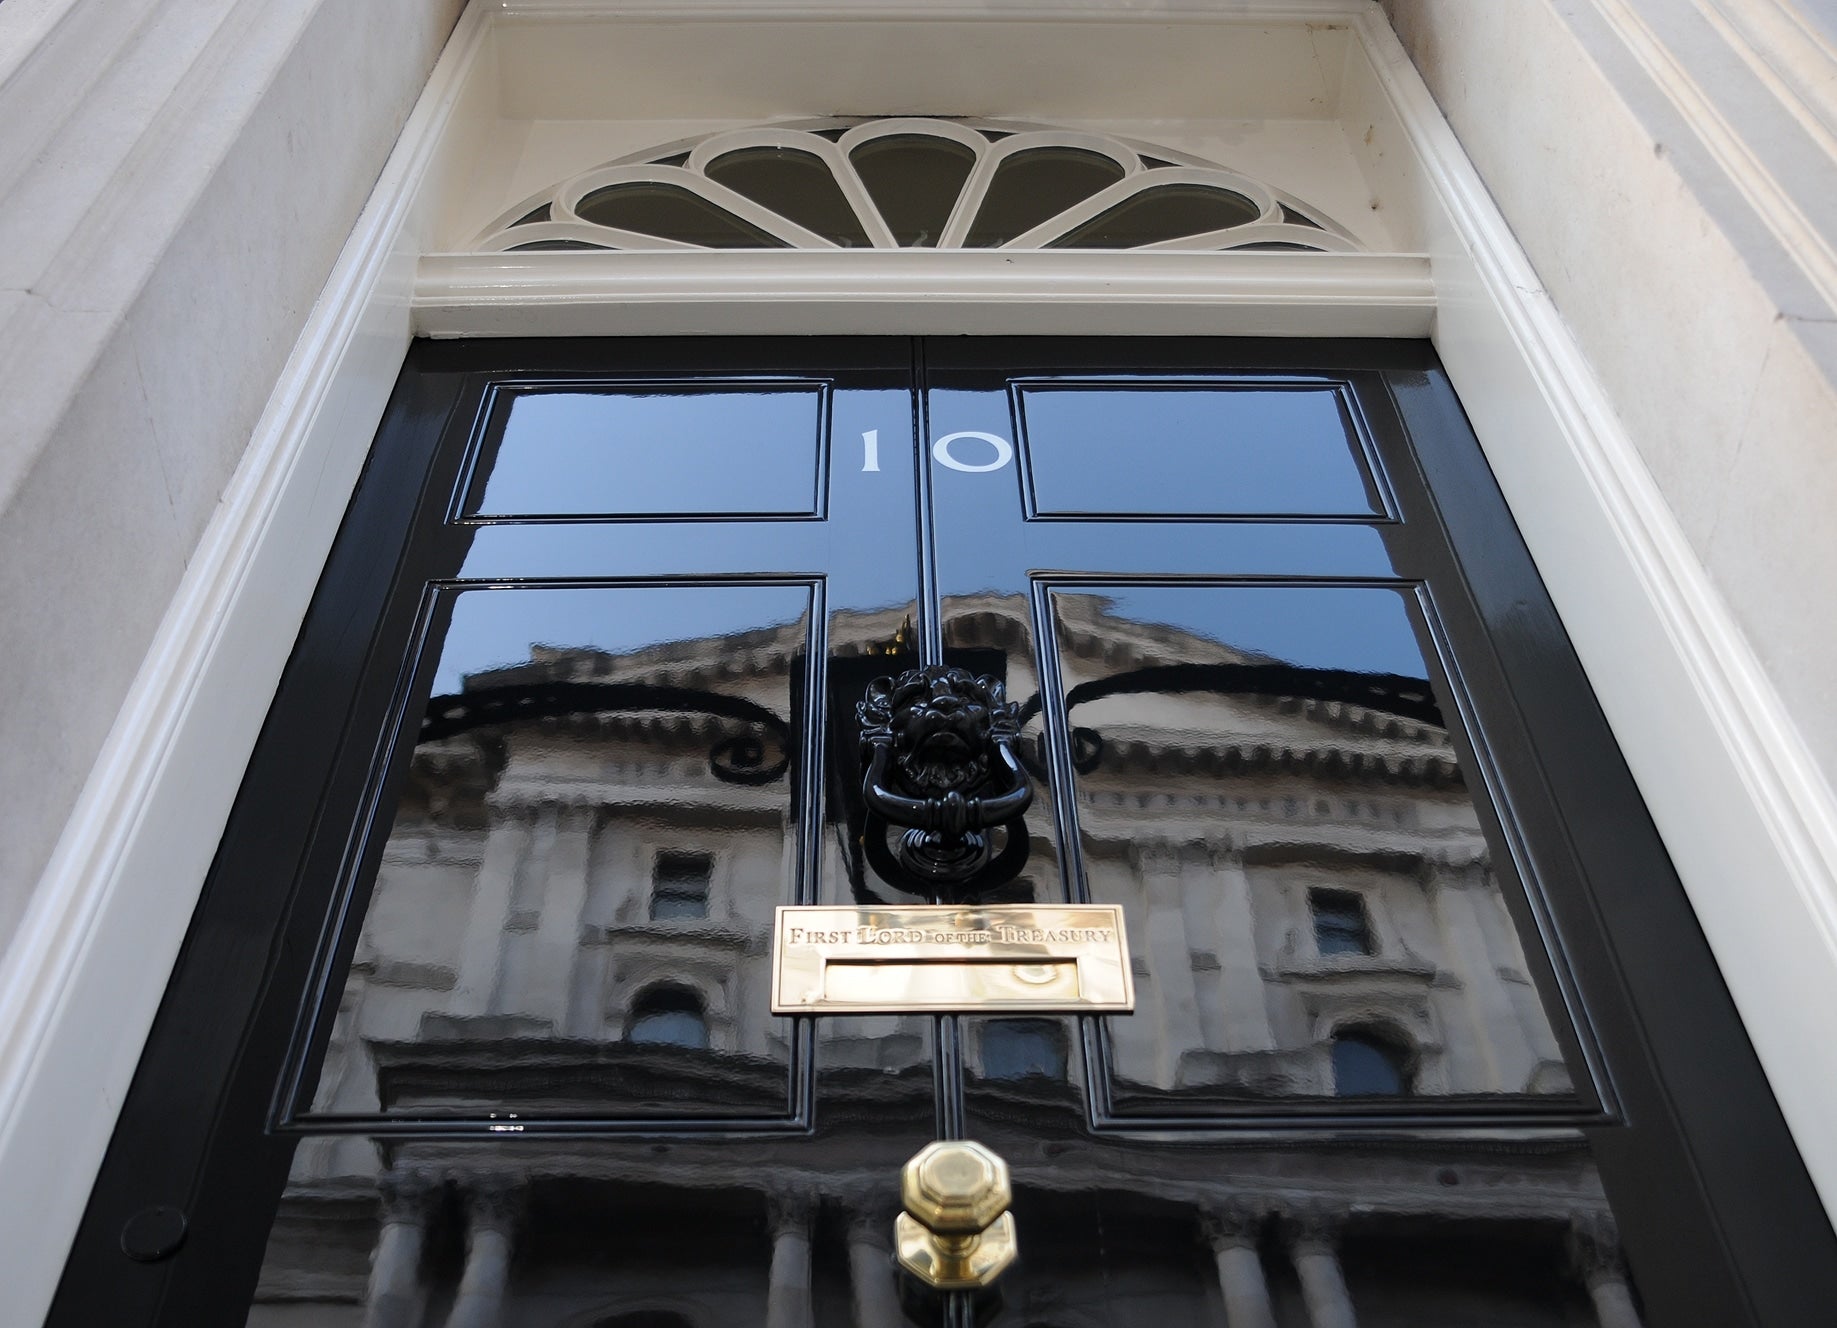 Number 10 Downing Street front door